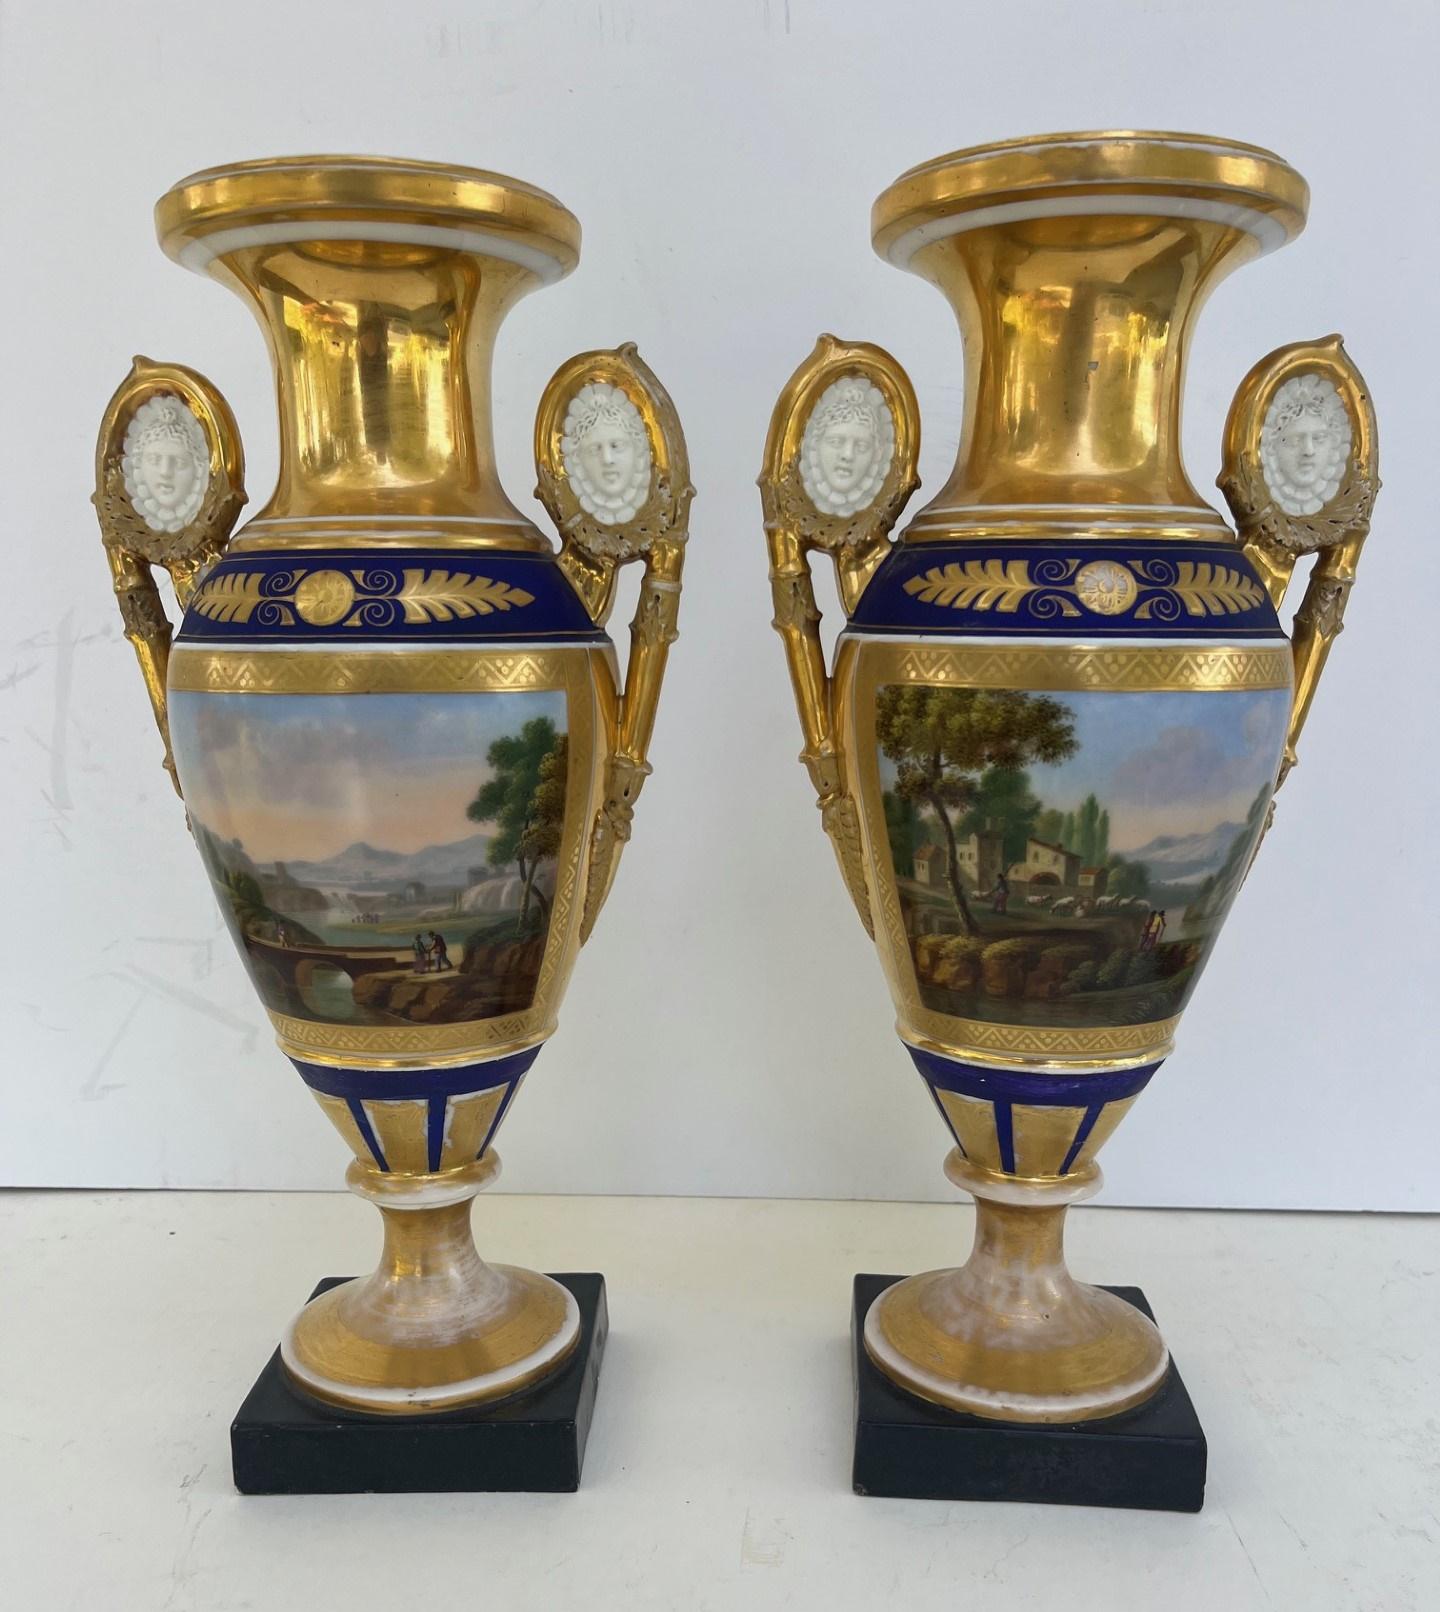 Paire de vases à deux anses en or et bleu cobalt.

Paire de vases de forme balustre en porcelaine de Paris du début du 19e siècle. Chaque face est peinte de manière très élaborée avec les décorations polychromes et dorées les plus complexes.